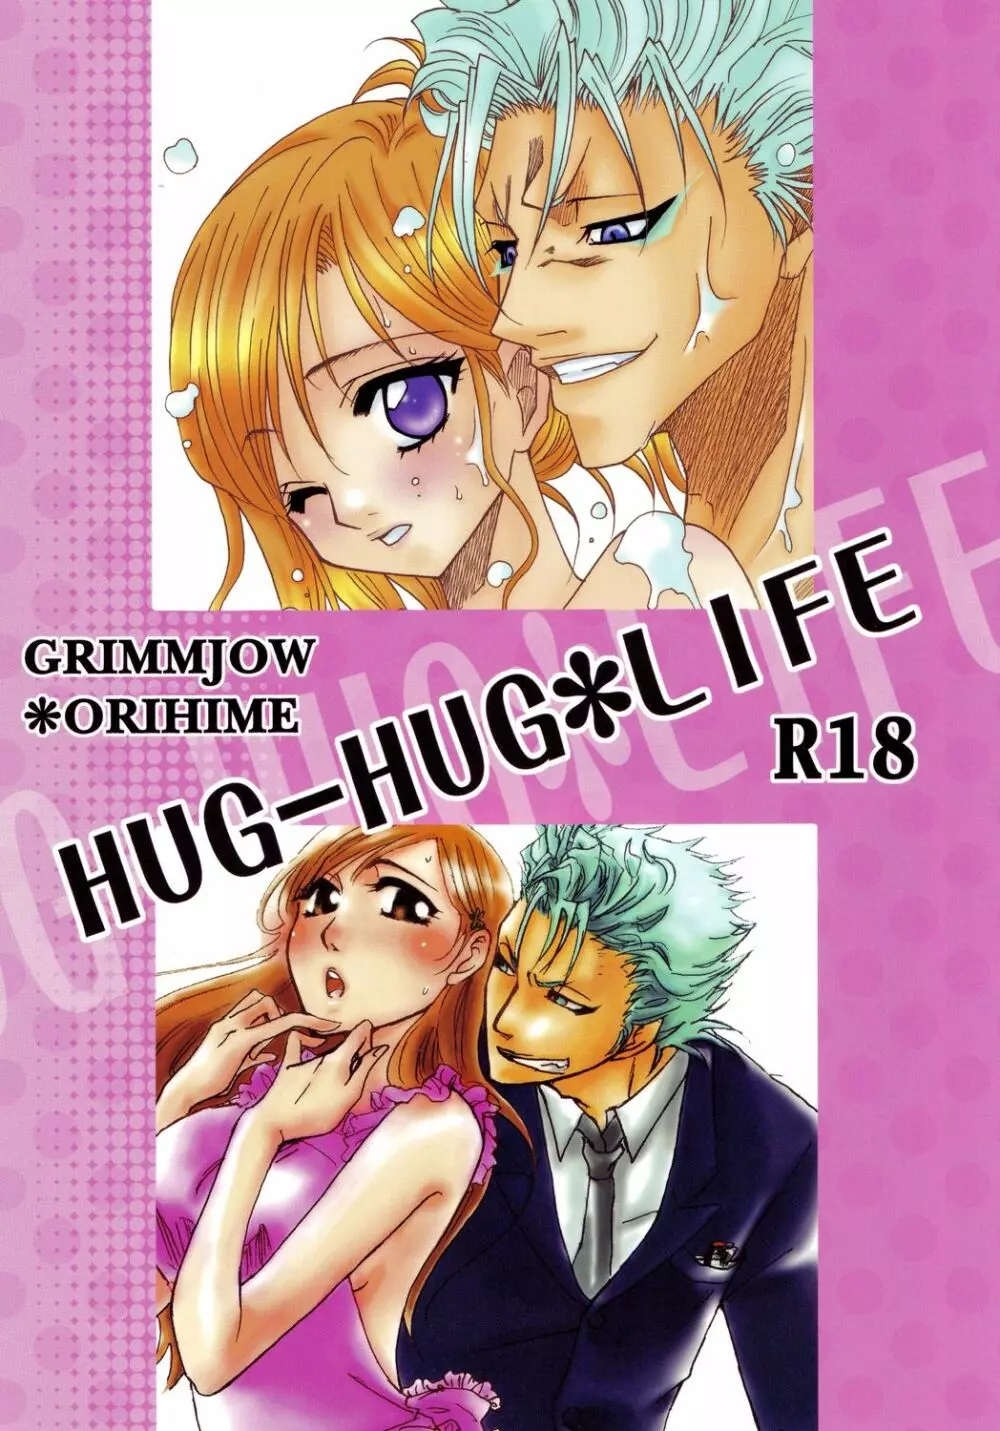 HUG-HUG*LIFE